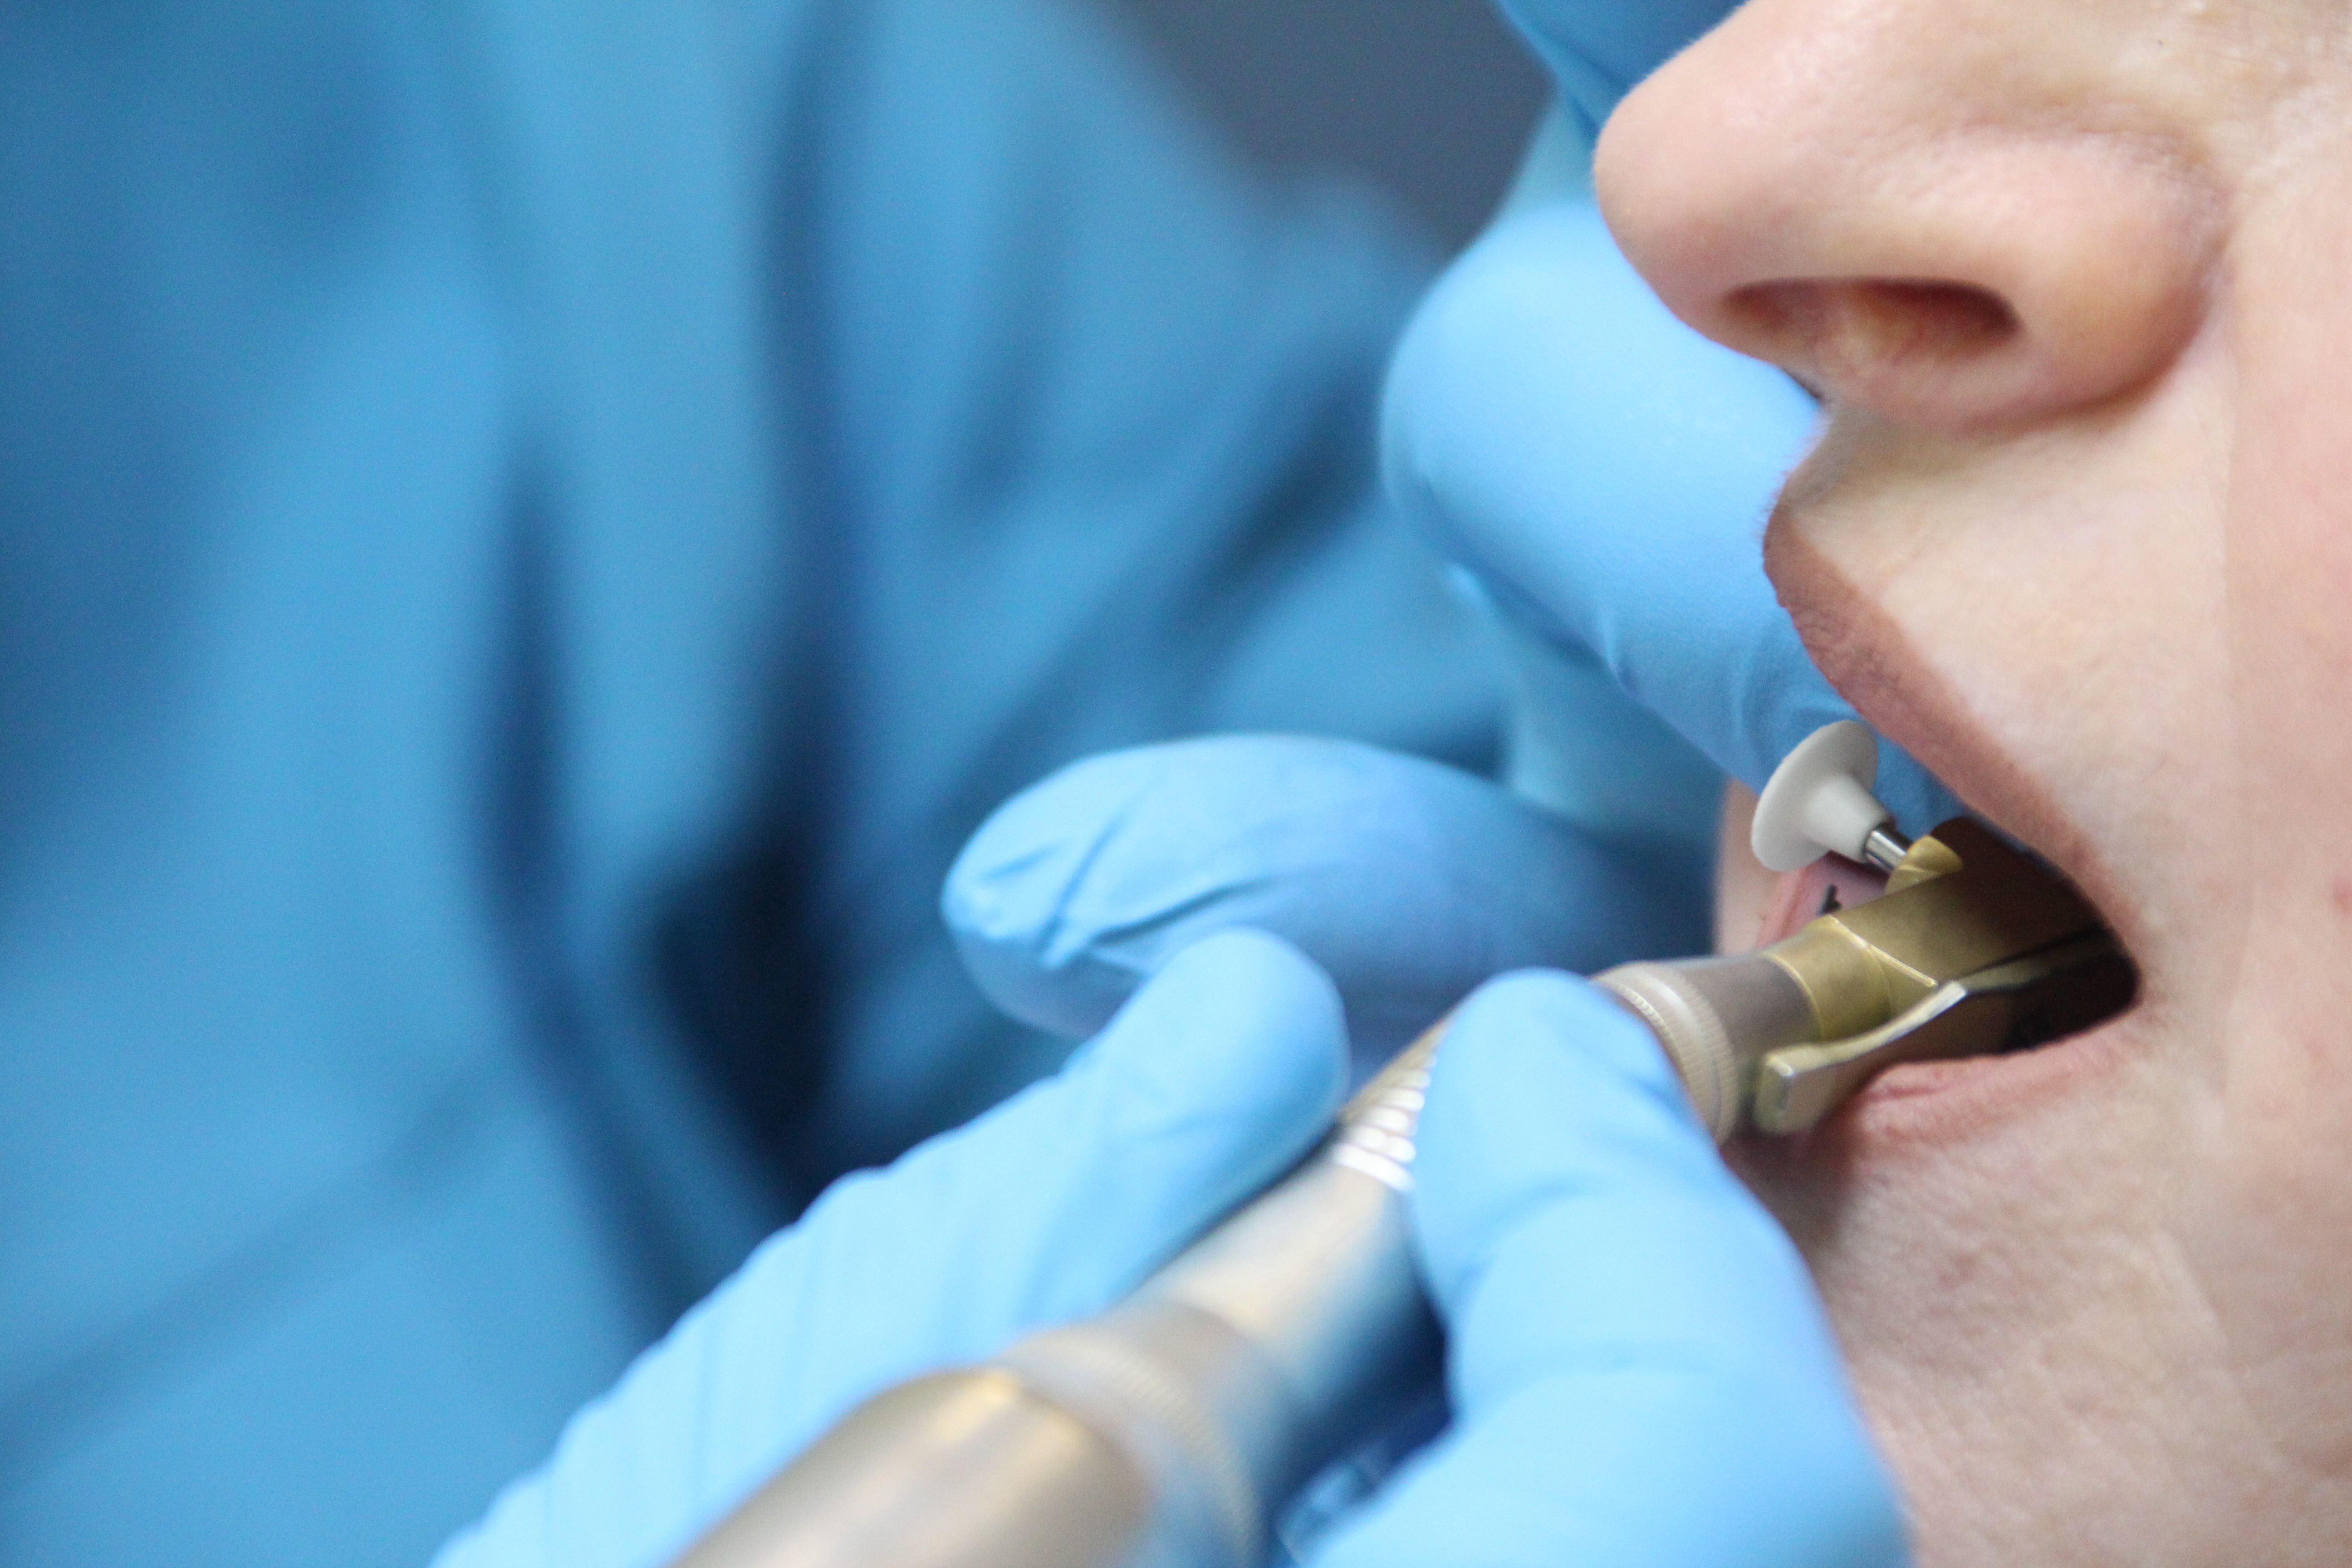 Современная стоматология доступна каждому